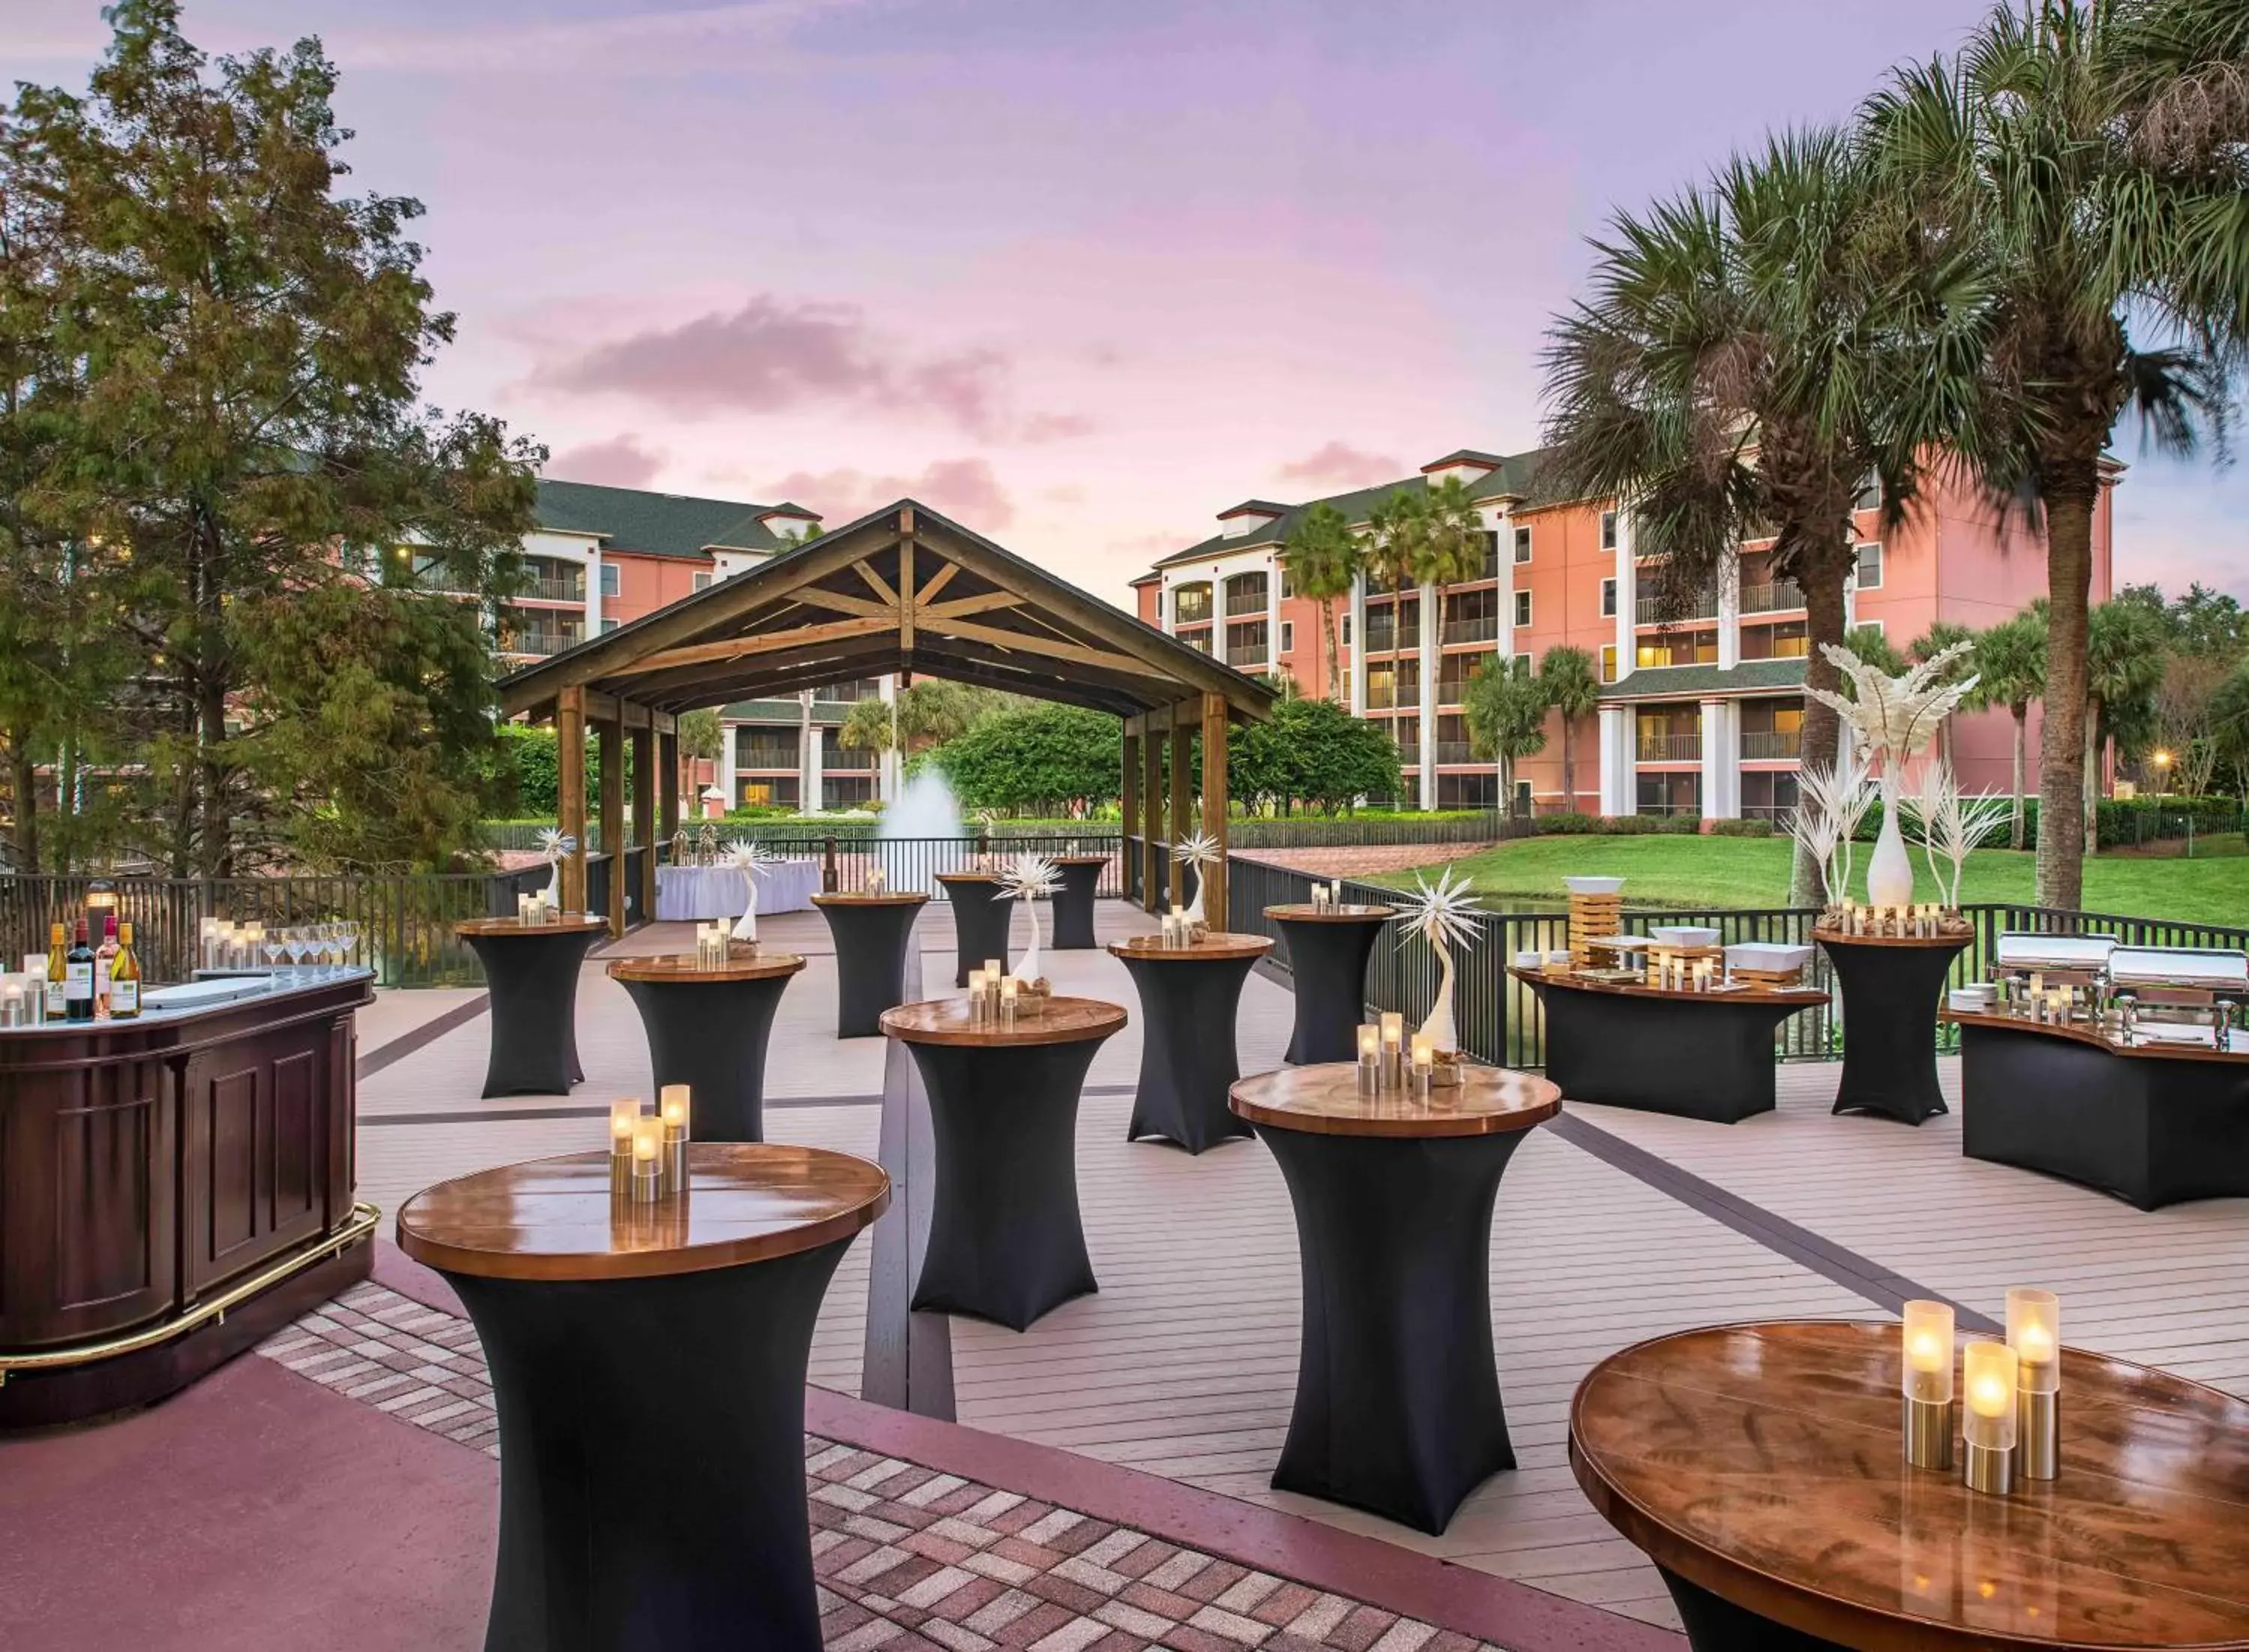 Banquet/Function facilities in Caribe Royale Orlando